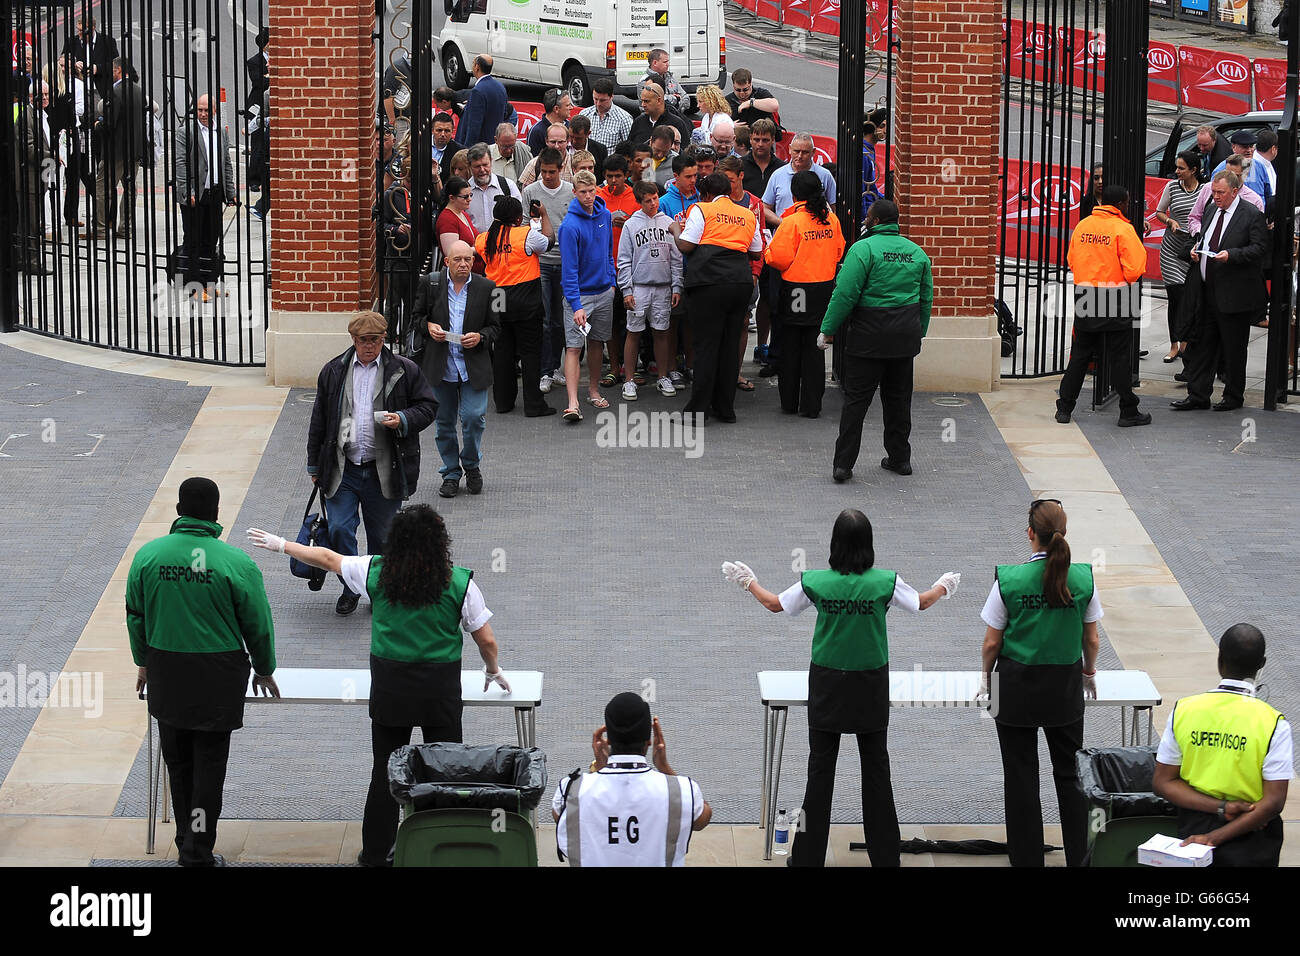 Cricket - seconda NatWest T20 - Inghilterra / Nuova Zelanda - The Kia Oval. Gli steward aprono le porte per lasciare la folla di spettatori a terra Foto Stock